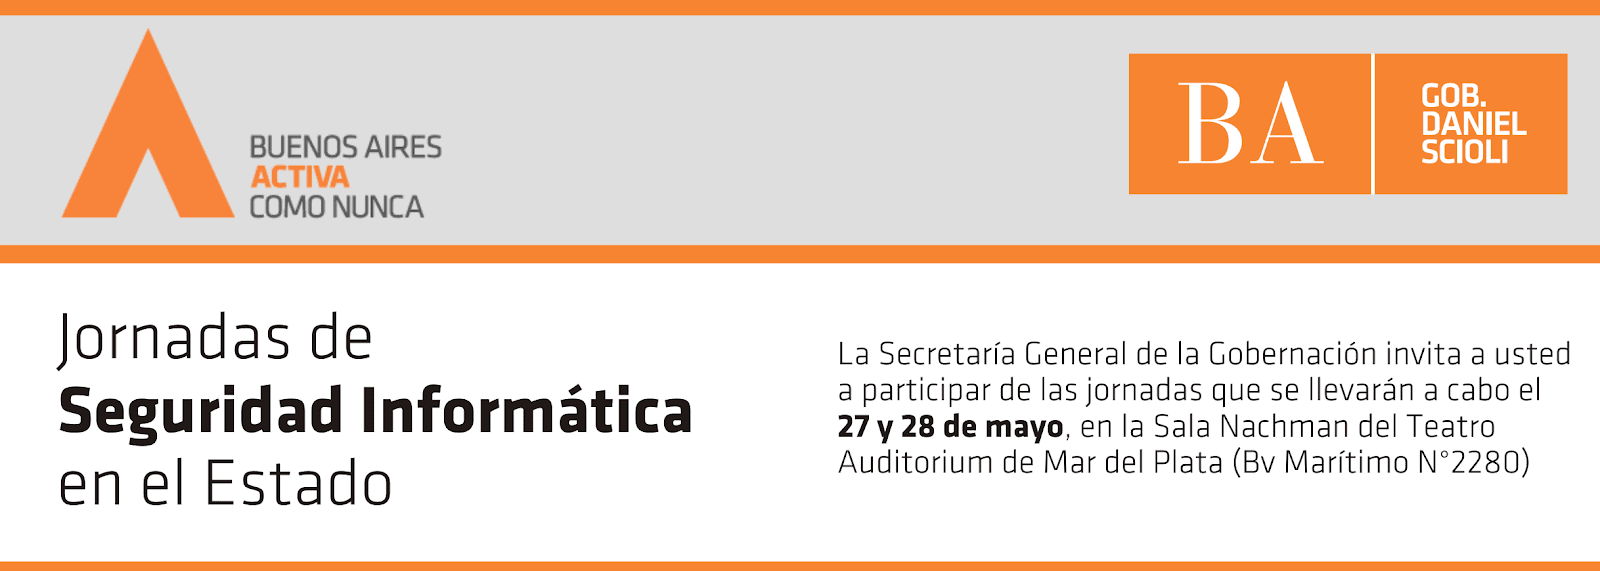 www.CXO2CSO.com: Primeras Jornadas de Seguridad Informática en el Estado - Argentina